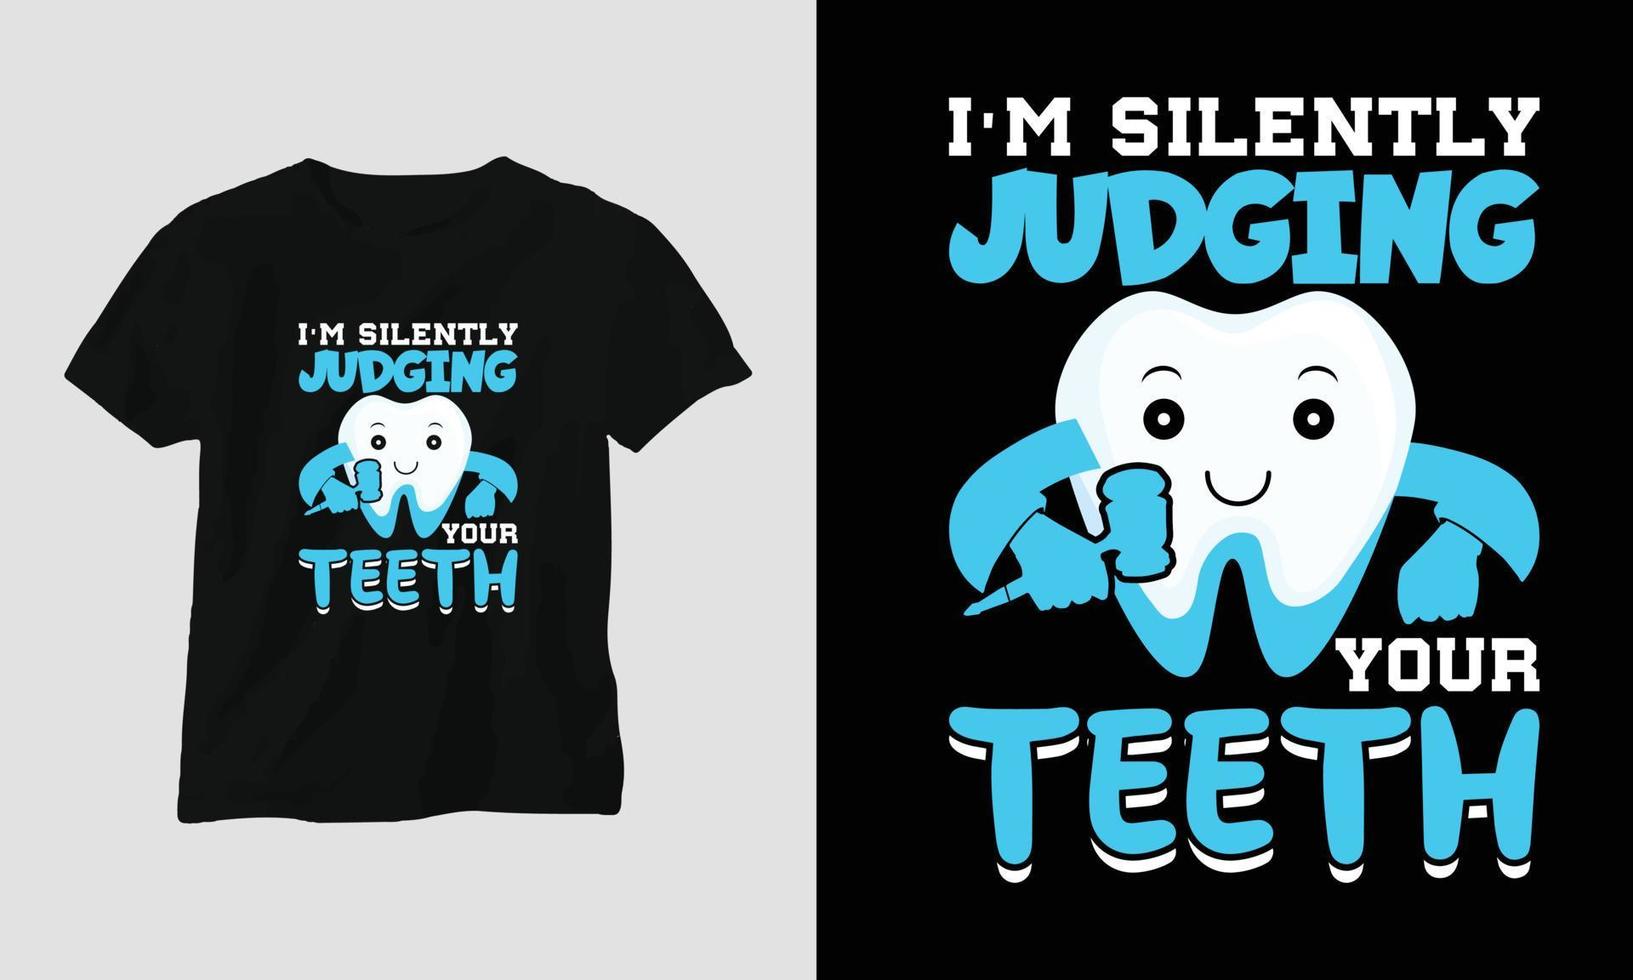 Camiseta de dentista vectorial o diseño lindo de póster con dientes de dibujos animados, elementos dentales, etc. vector